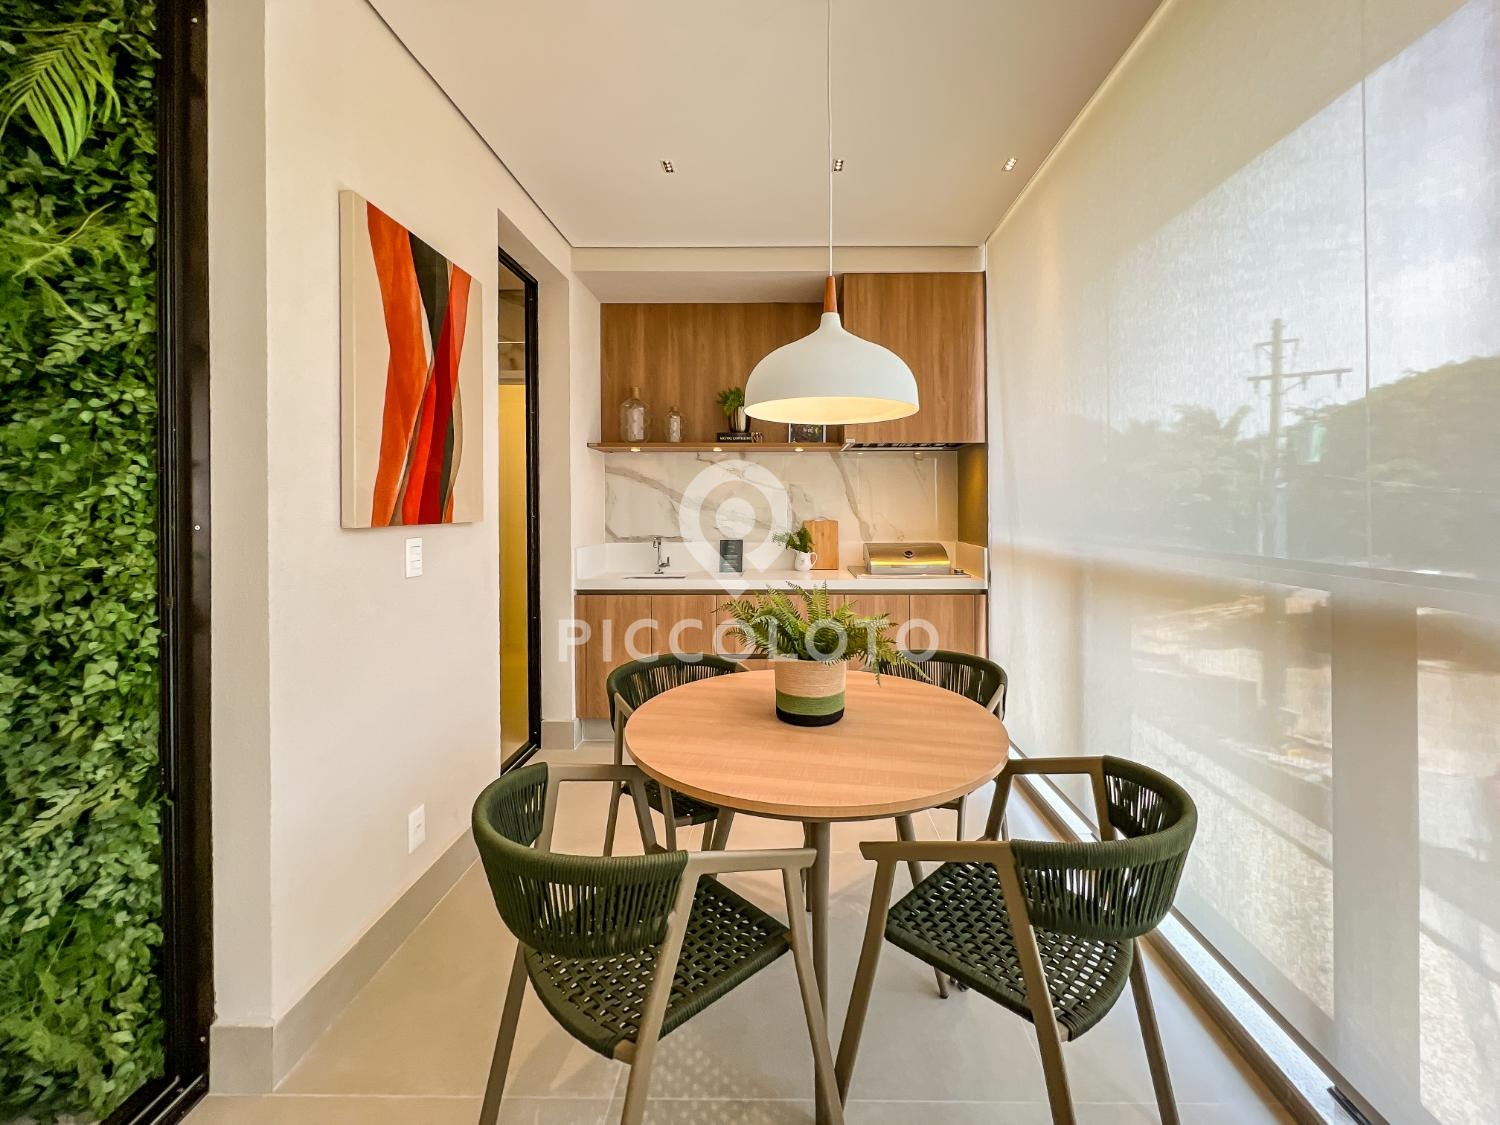 Piccoloto -Apartamento à venda no Jardim das Paineiras em Campinas